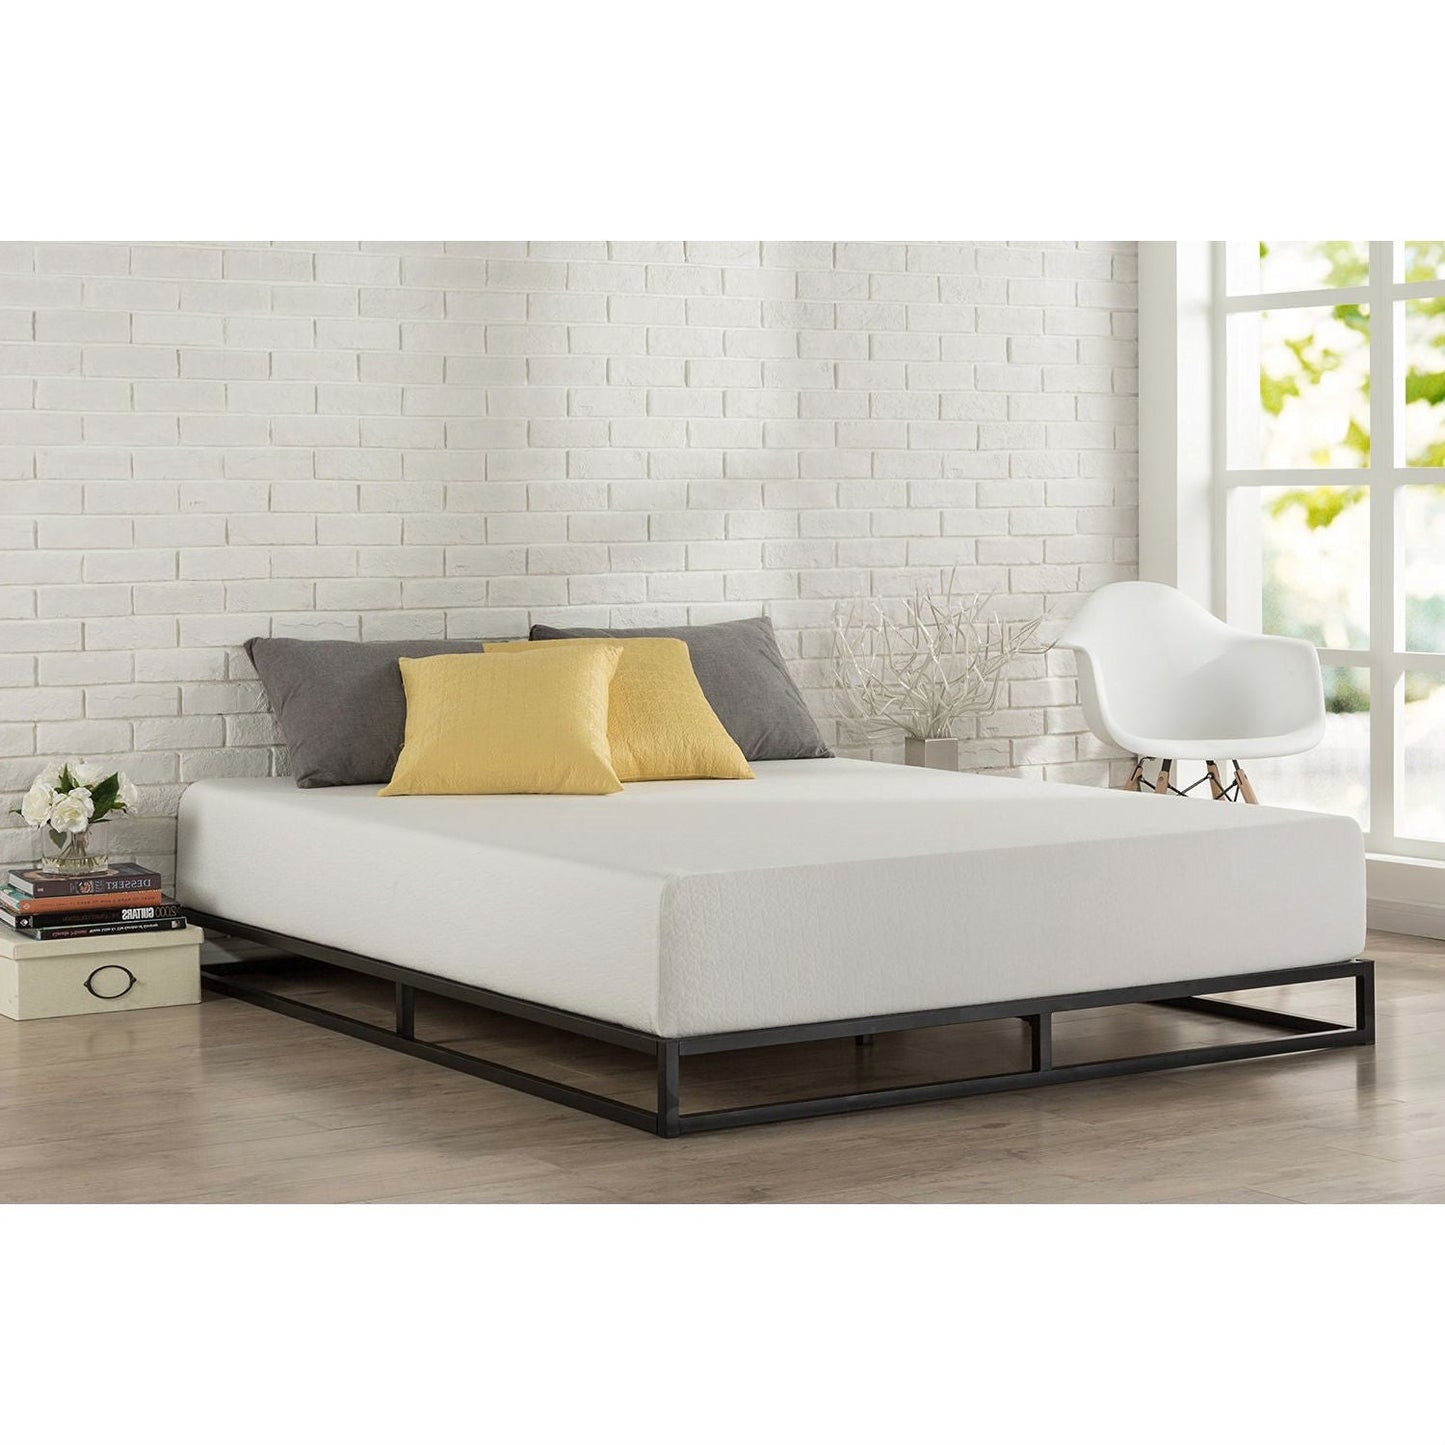 Bedroom > Bed Frames > Platform Beds - Twin 6-inch Low Profile Platform Bed Frame With Modern Wood Slats Mattress Support System